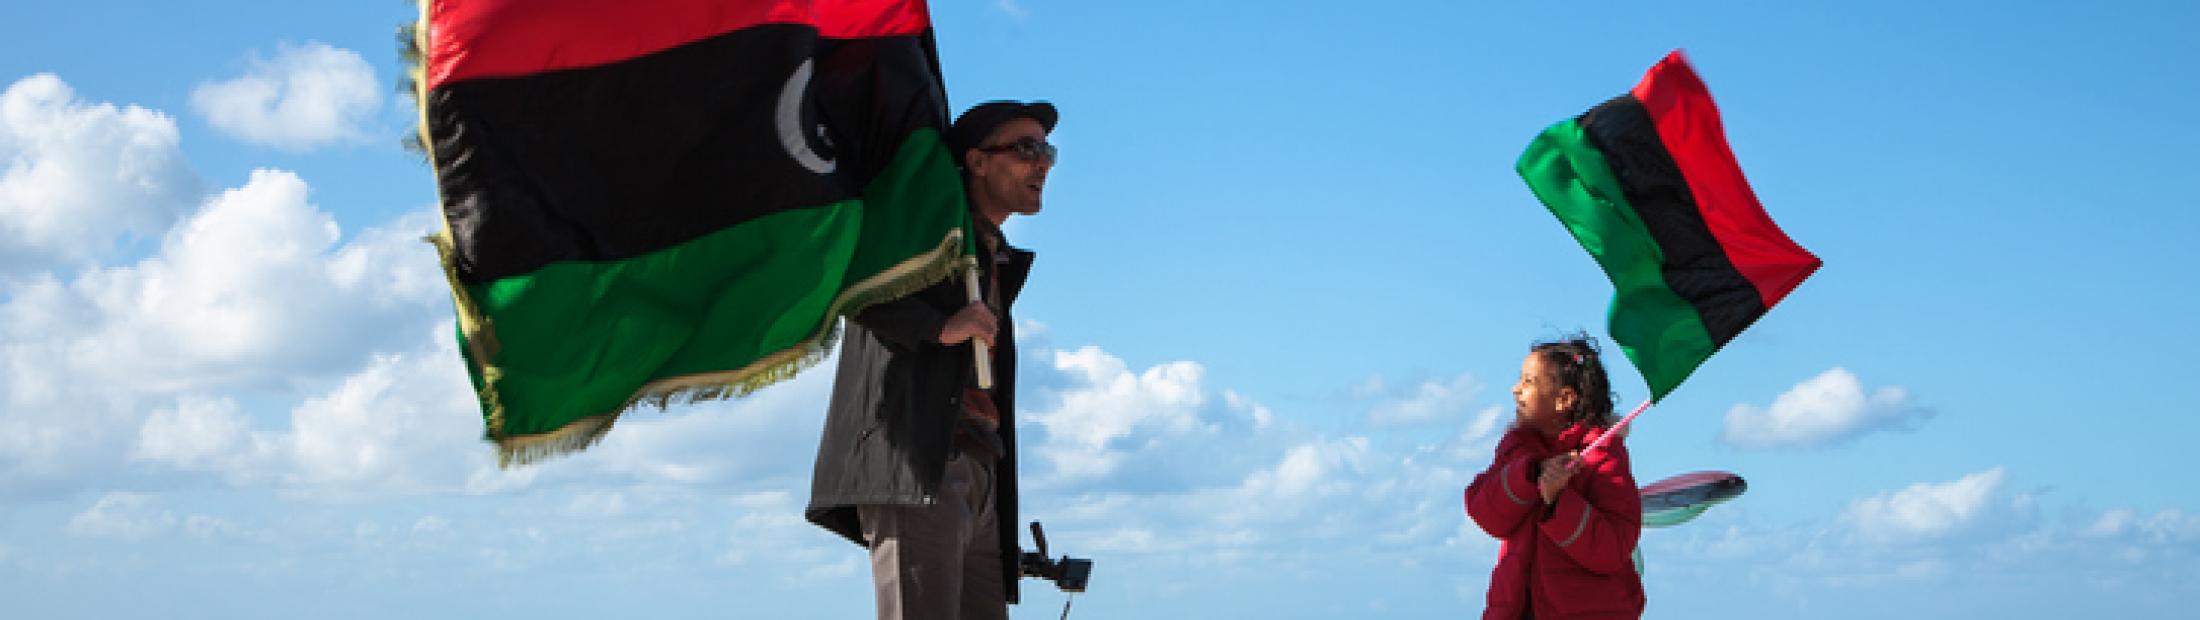 Península cirenaica: el origen de la guerra de Libia